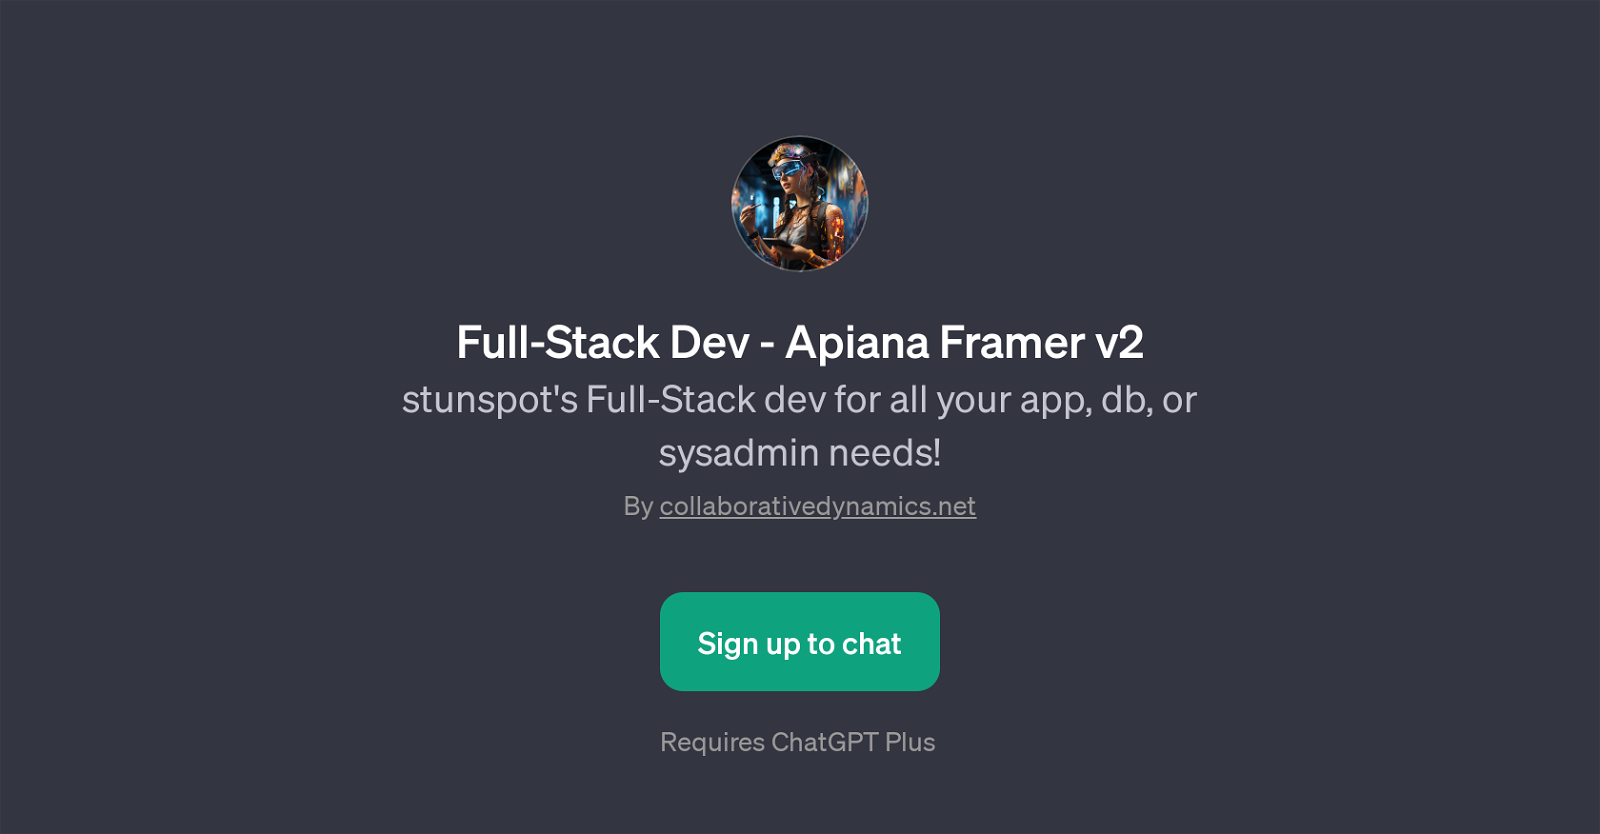 Full-Stack Dev - Apiana Framer v2 website